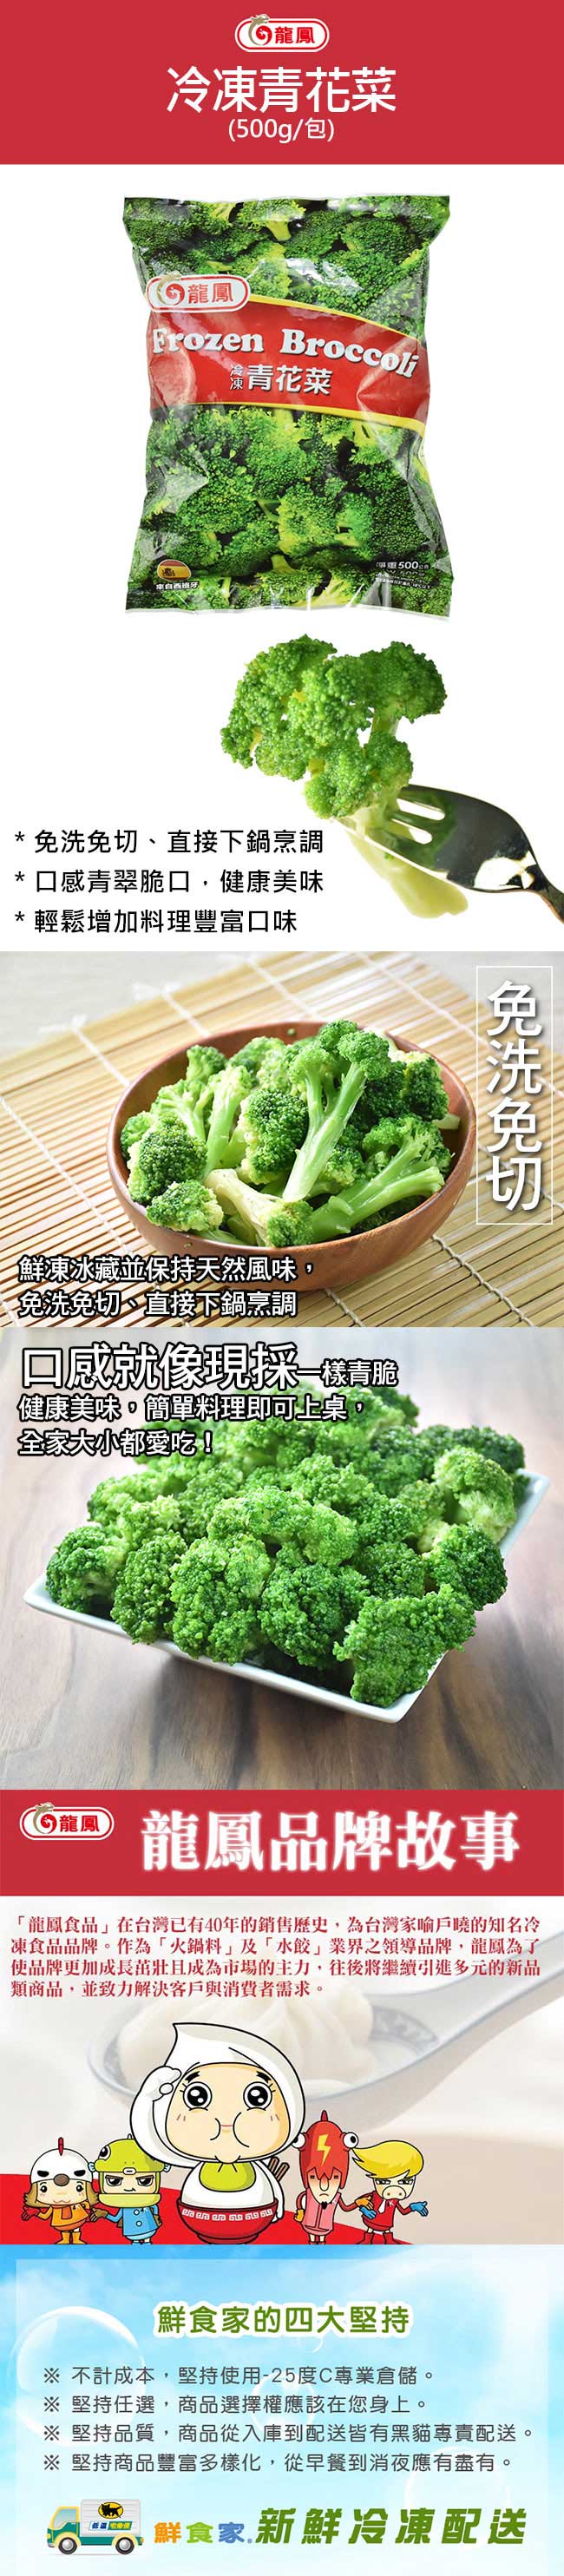 鮮食家 任選799 龍鳳fc 冷凍青花菜 500g 包 Momo購物網 雙11優惠推薦 22年11月